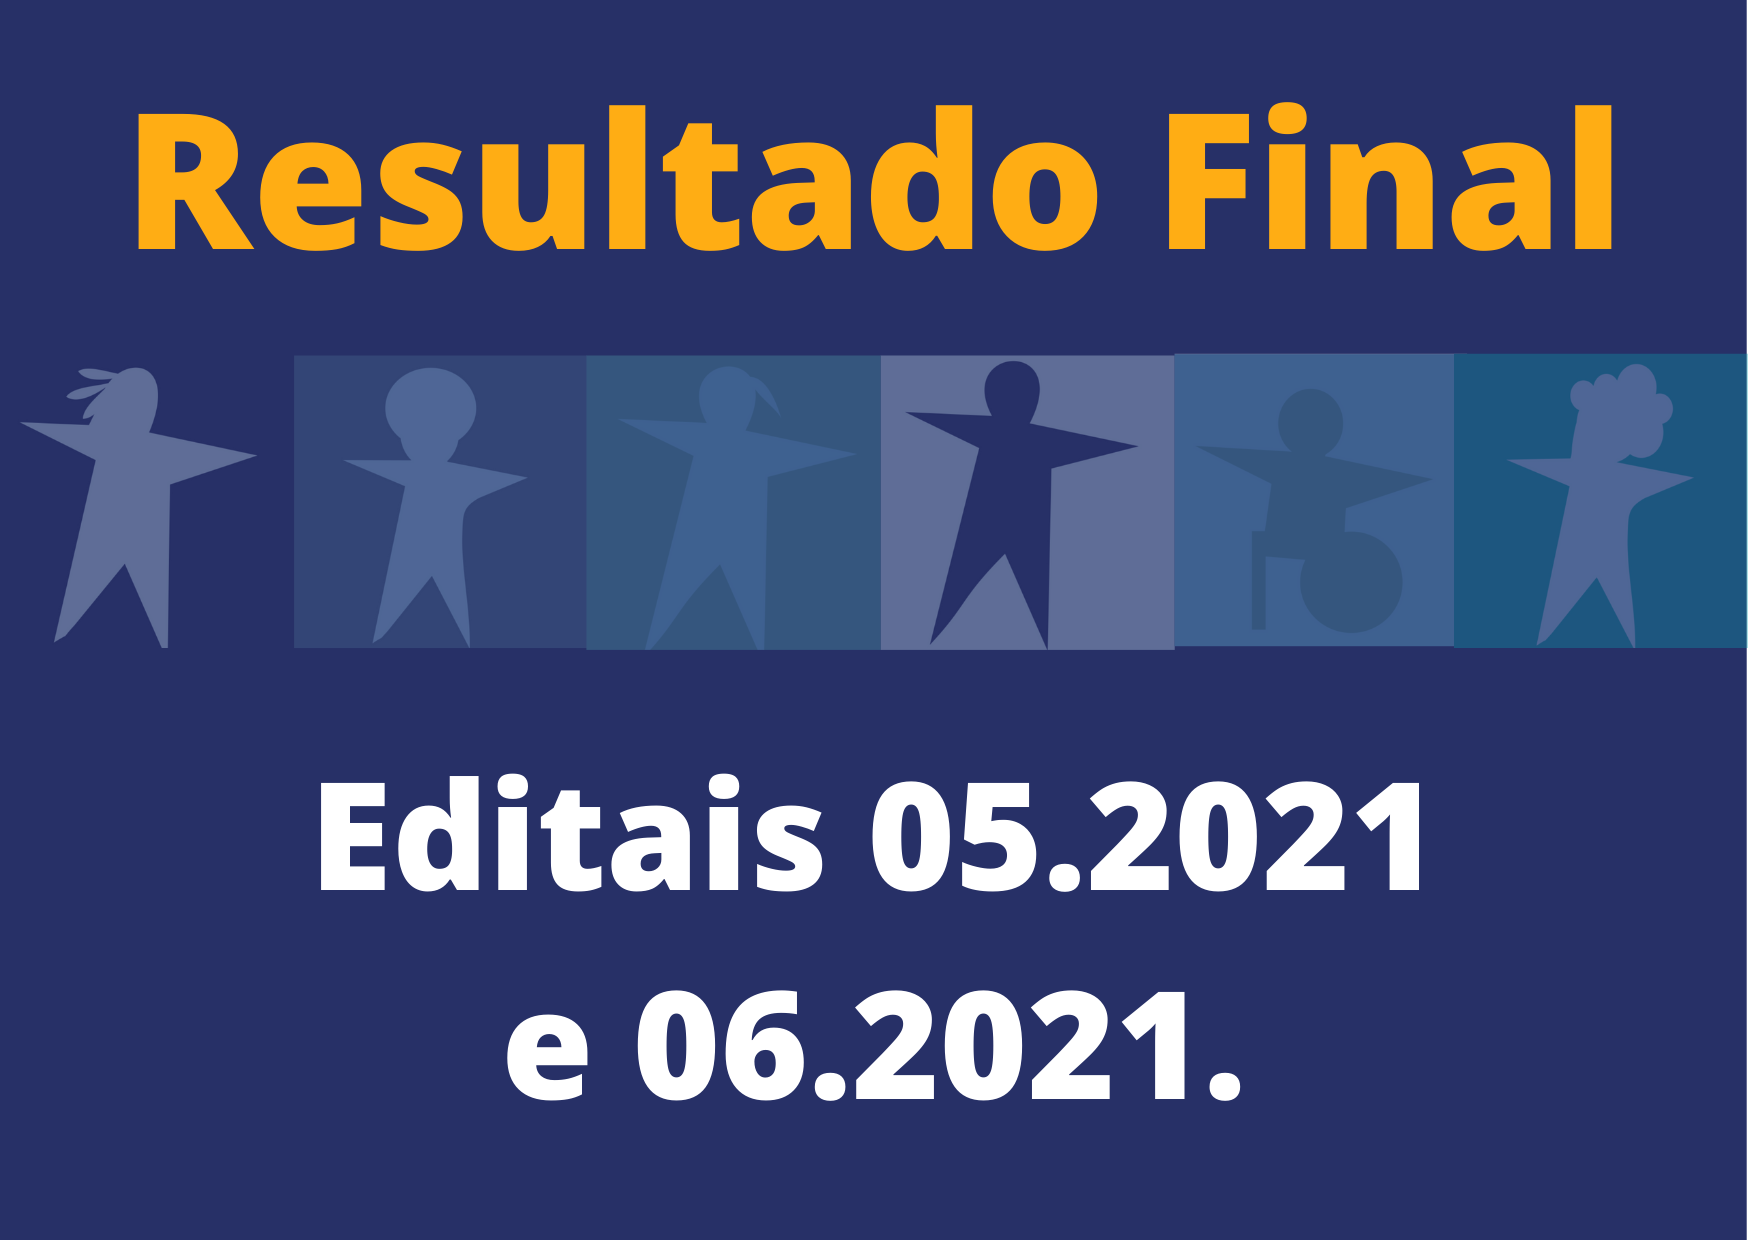 RESULTADO FINAL – Editais 05.2021 e 06.2021